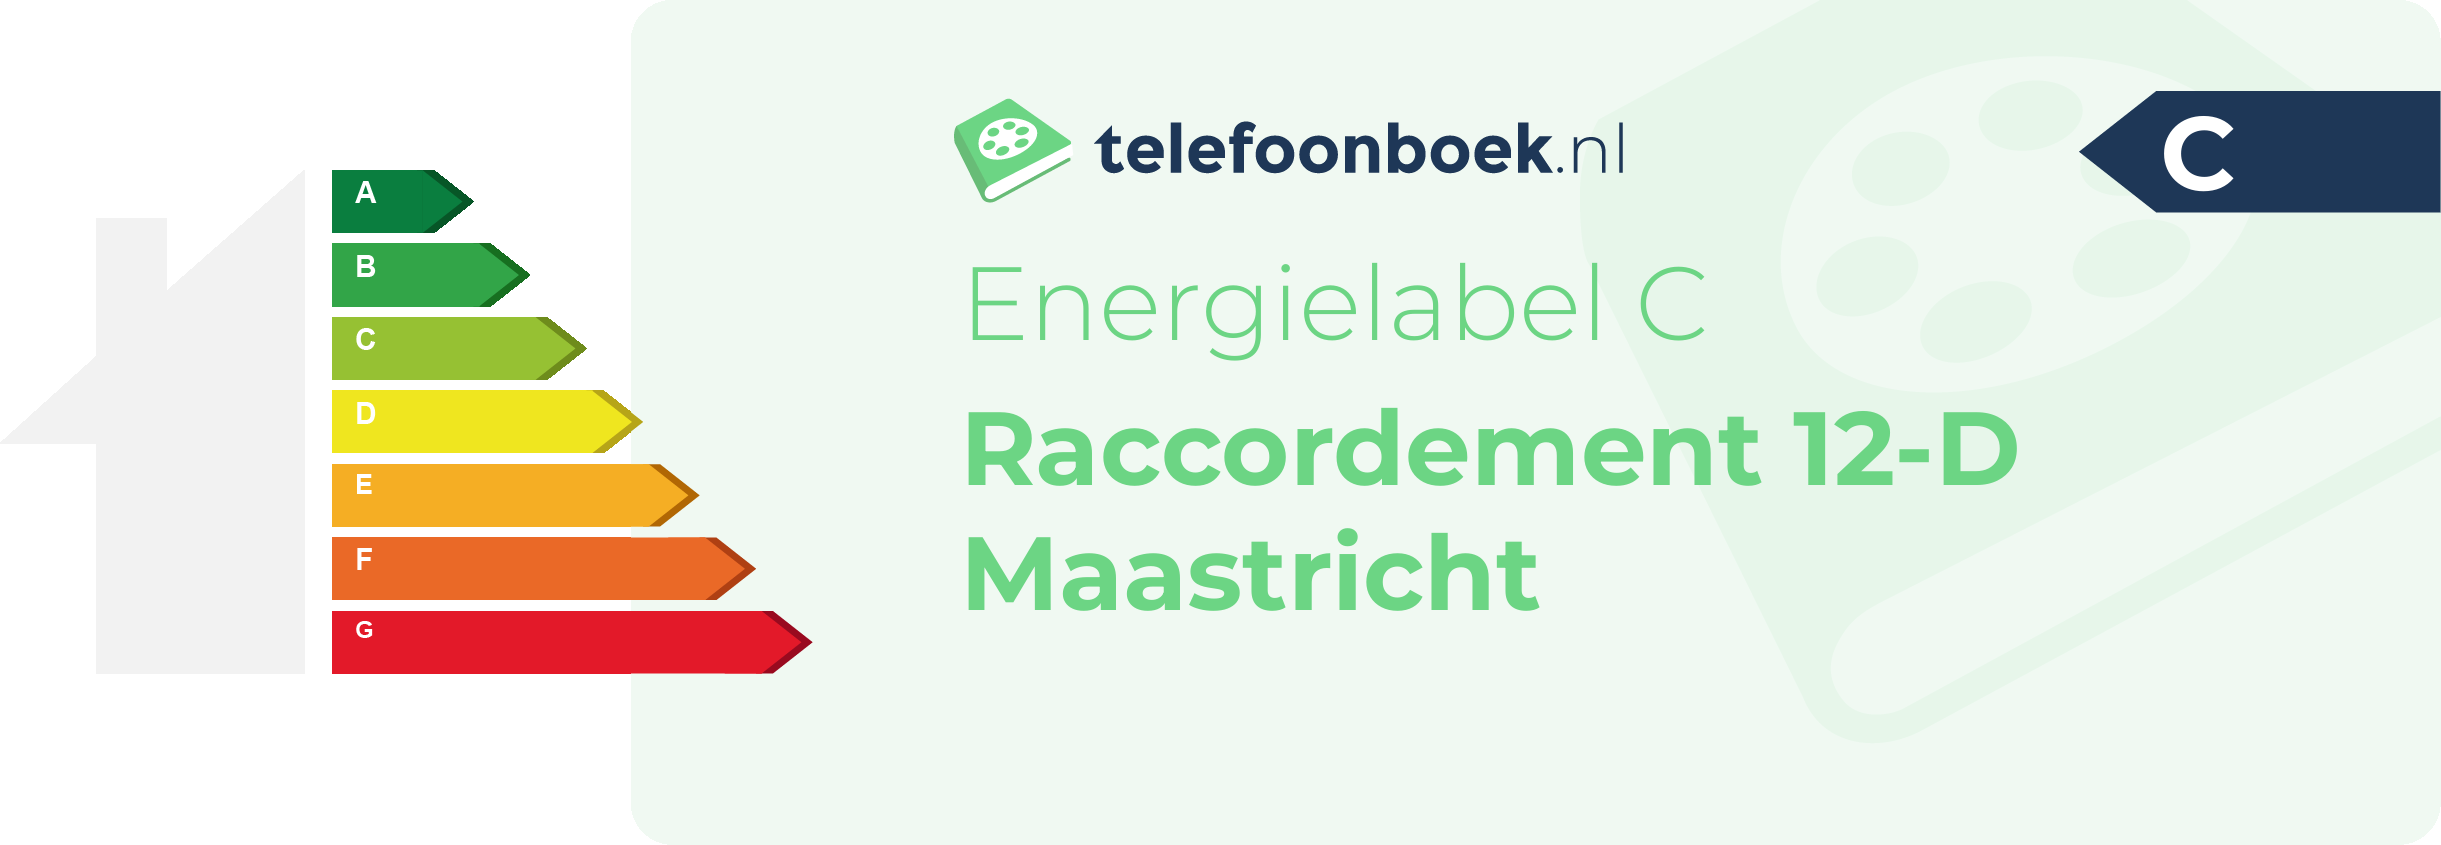 Energielabel Raccordement 12-D Maastricht